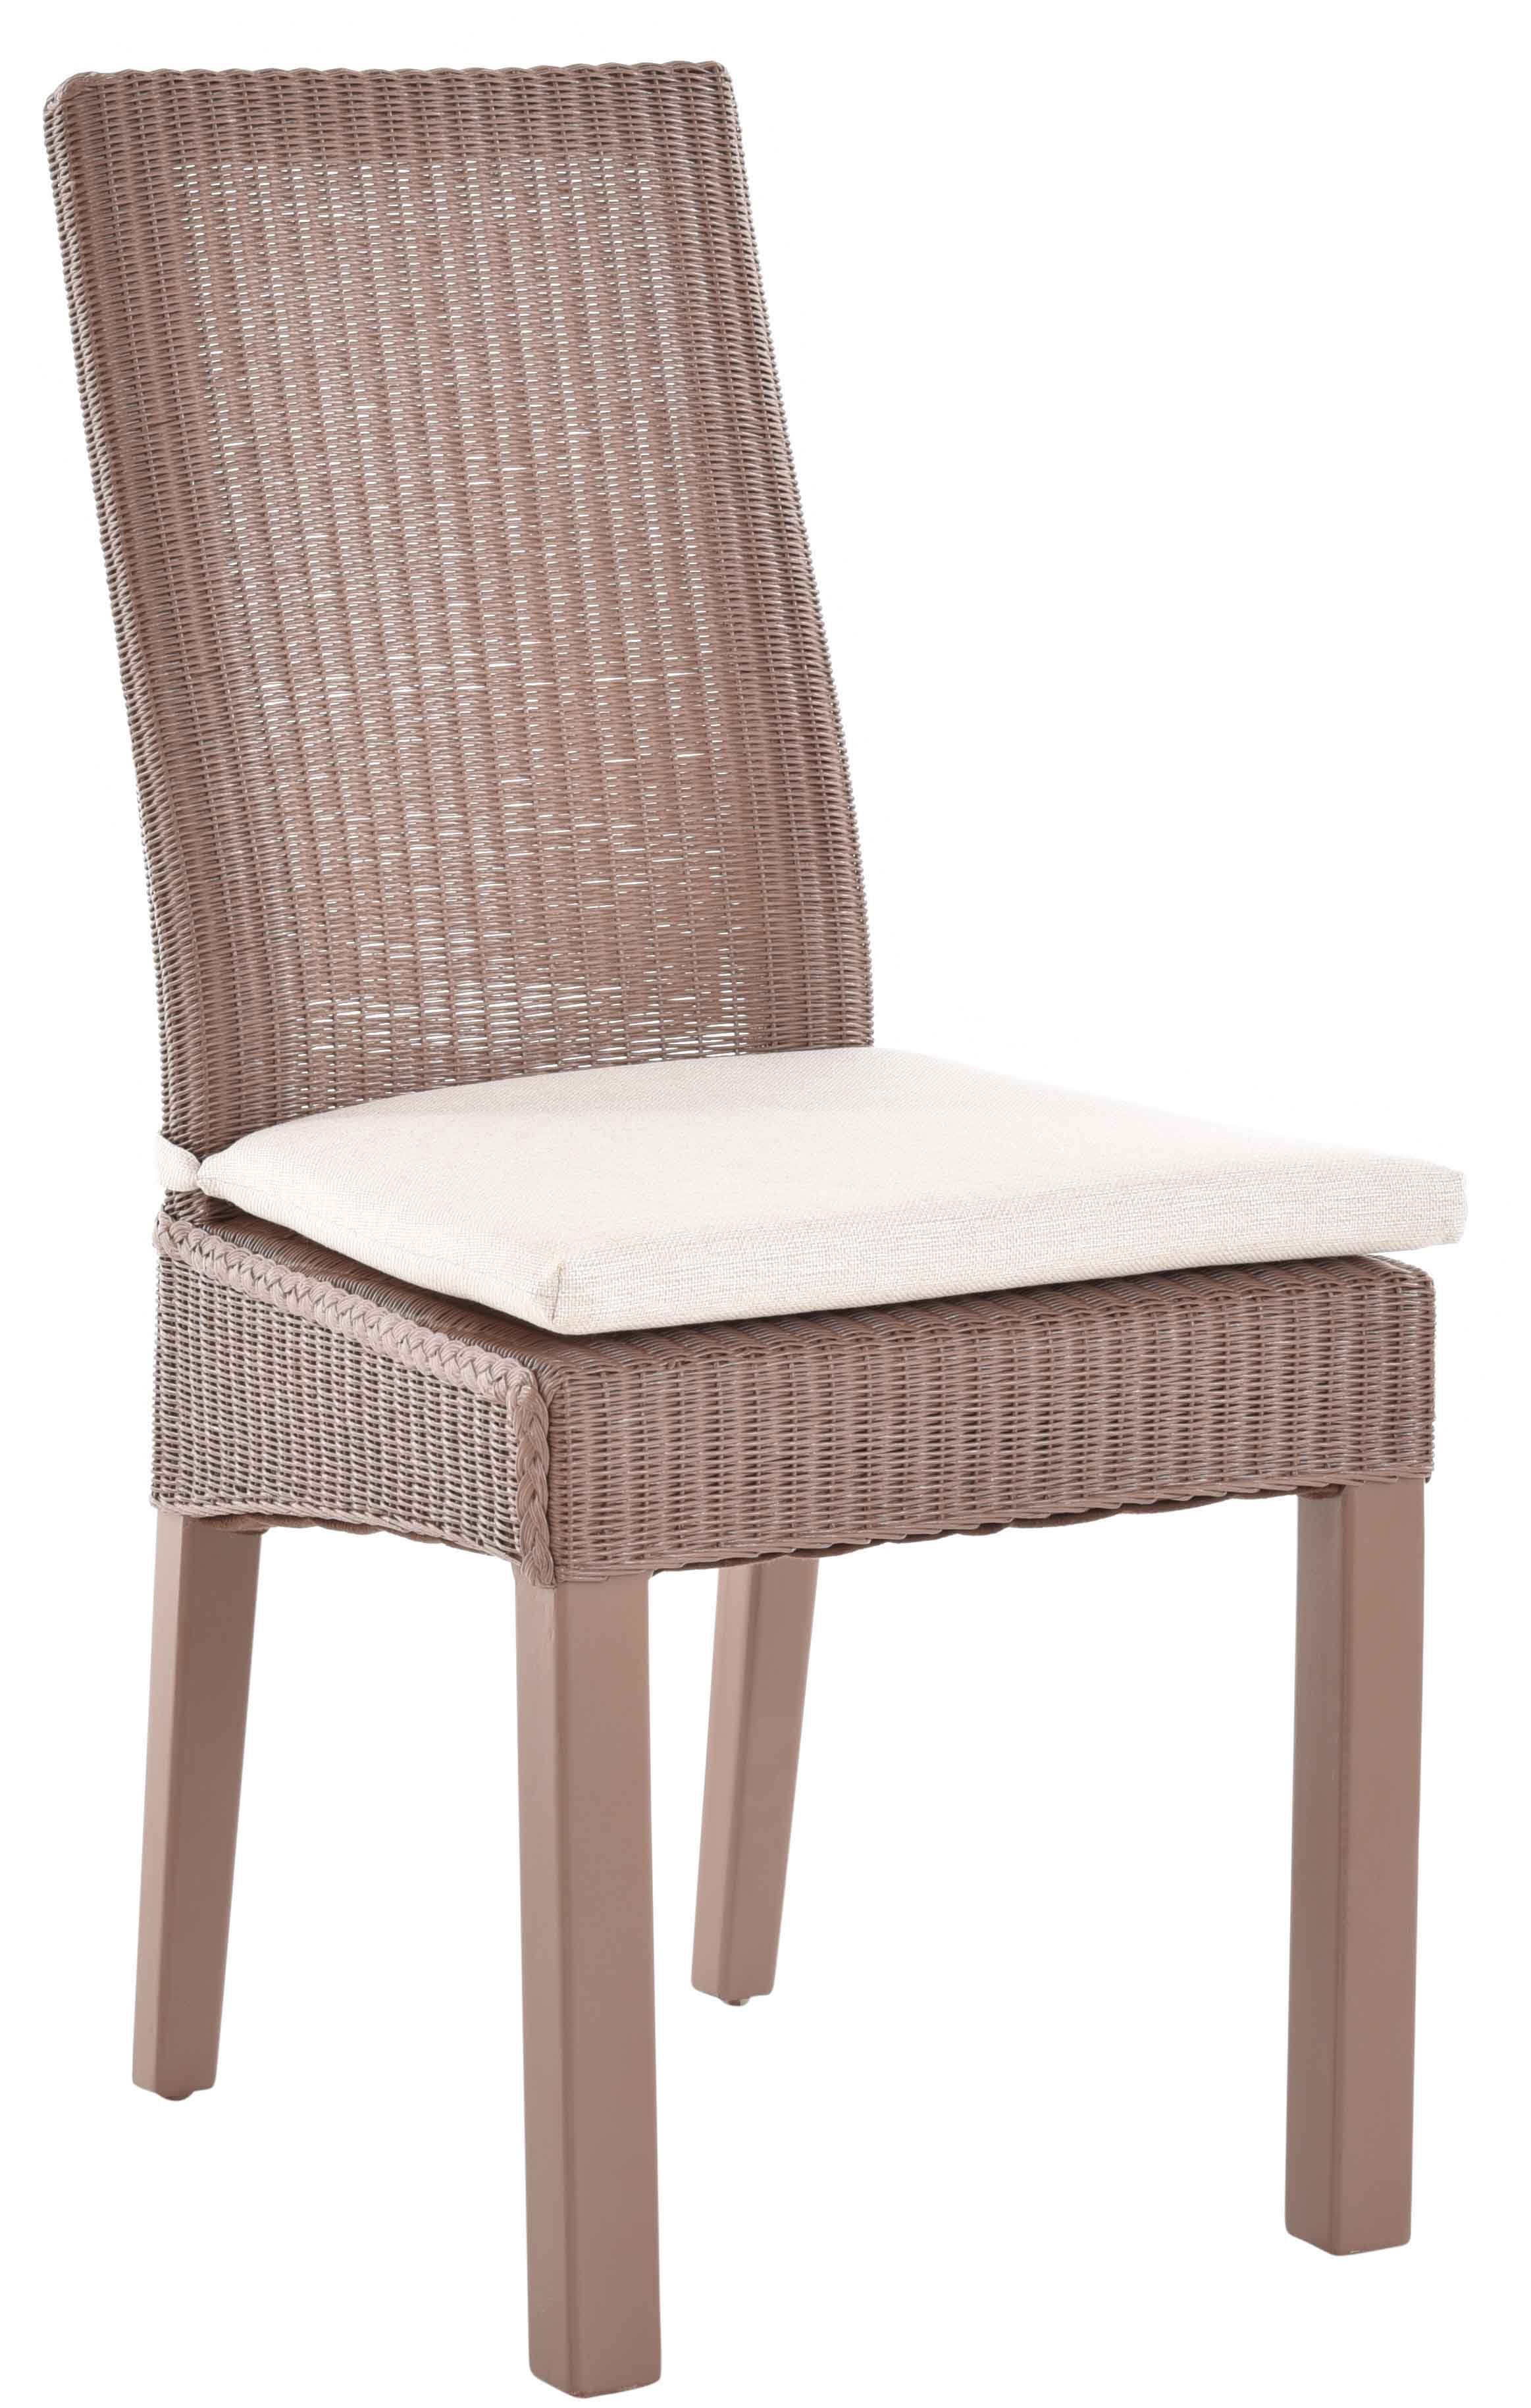 Krines Home Loom-Stuhl Küchenstuhl mit Esszimmerstuhl Esszimmer Kissen Esszimmerstuhl Holzrahmen Aubergine-Braun